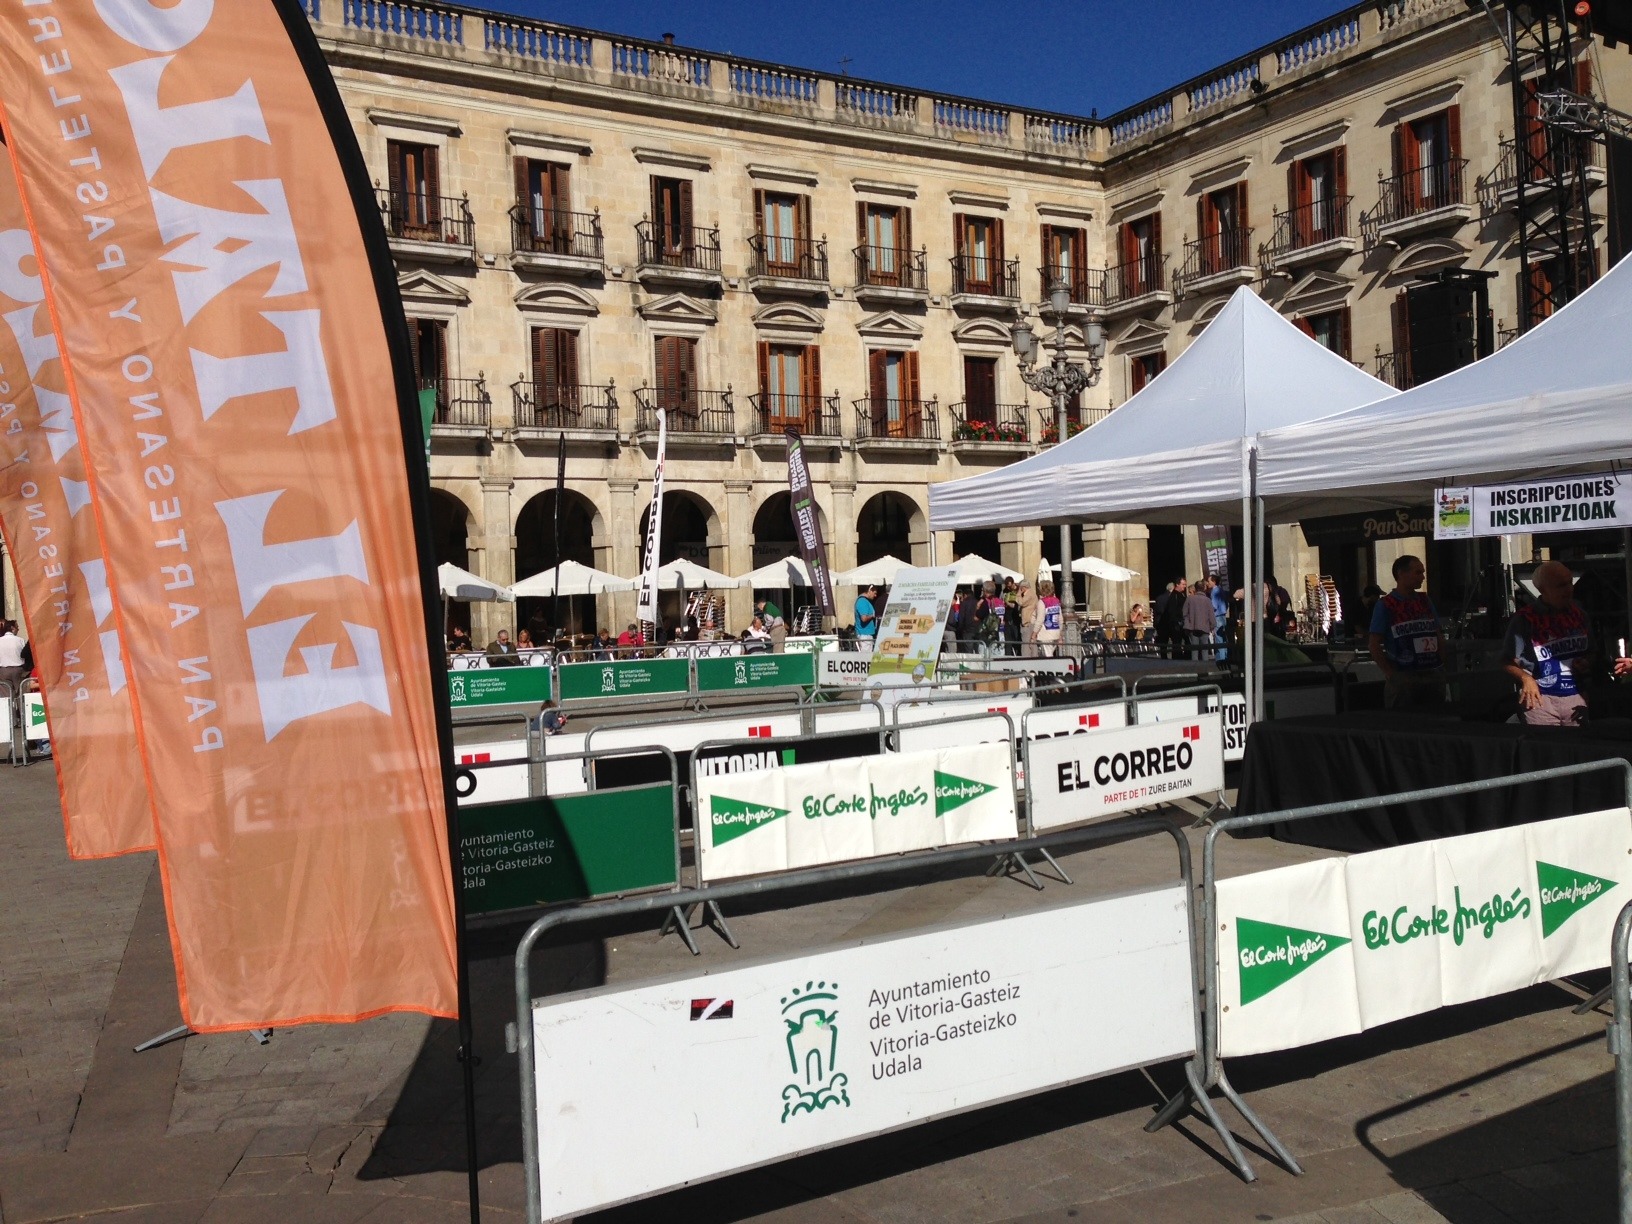 Eventokit Diario El Correo marcha green 2013, vallas banners y carpas plegables